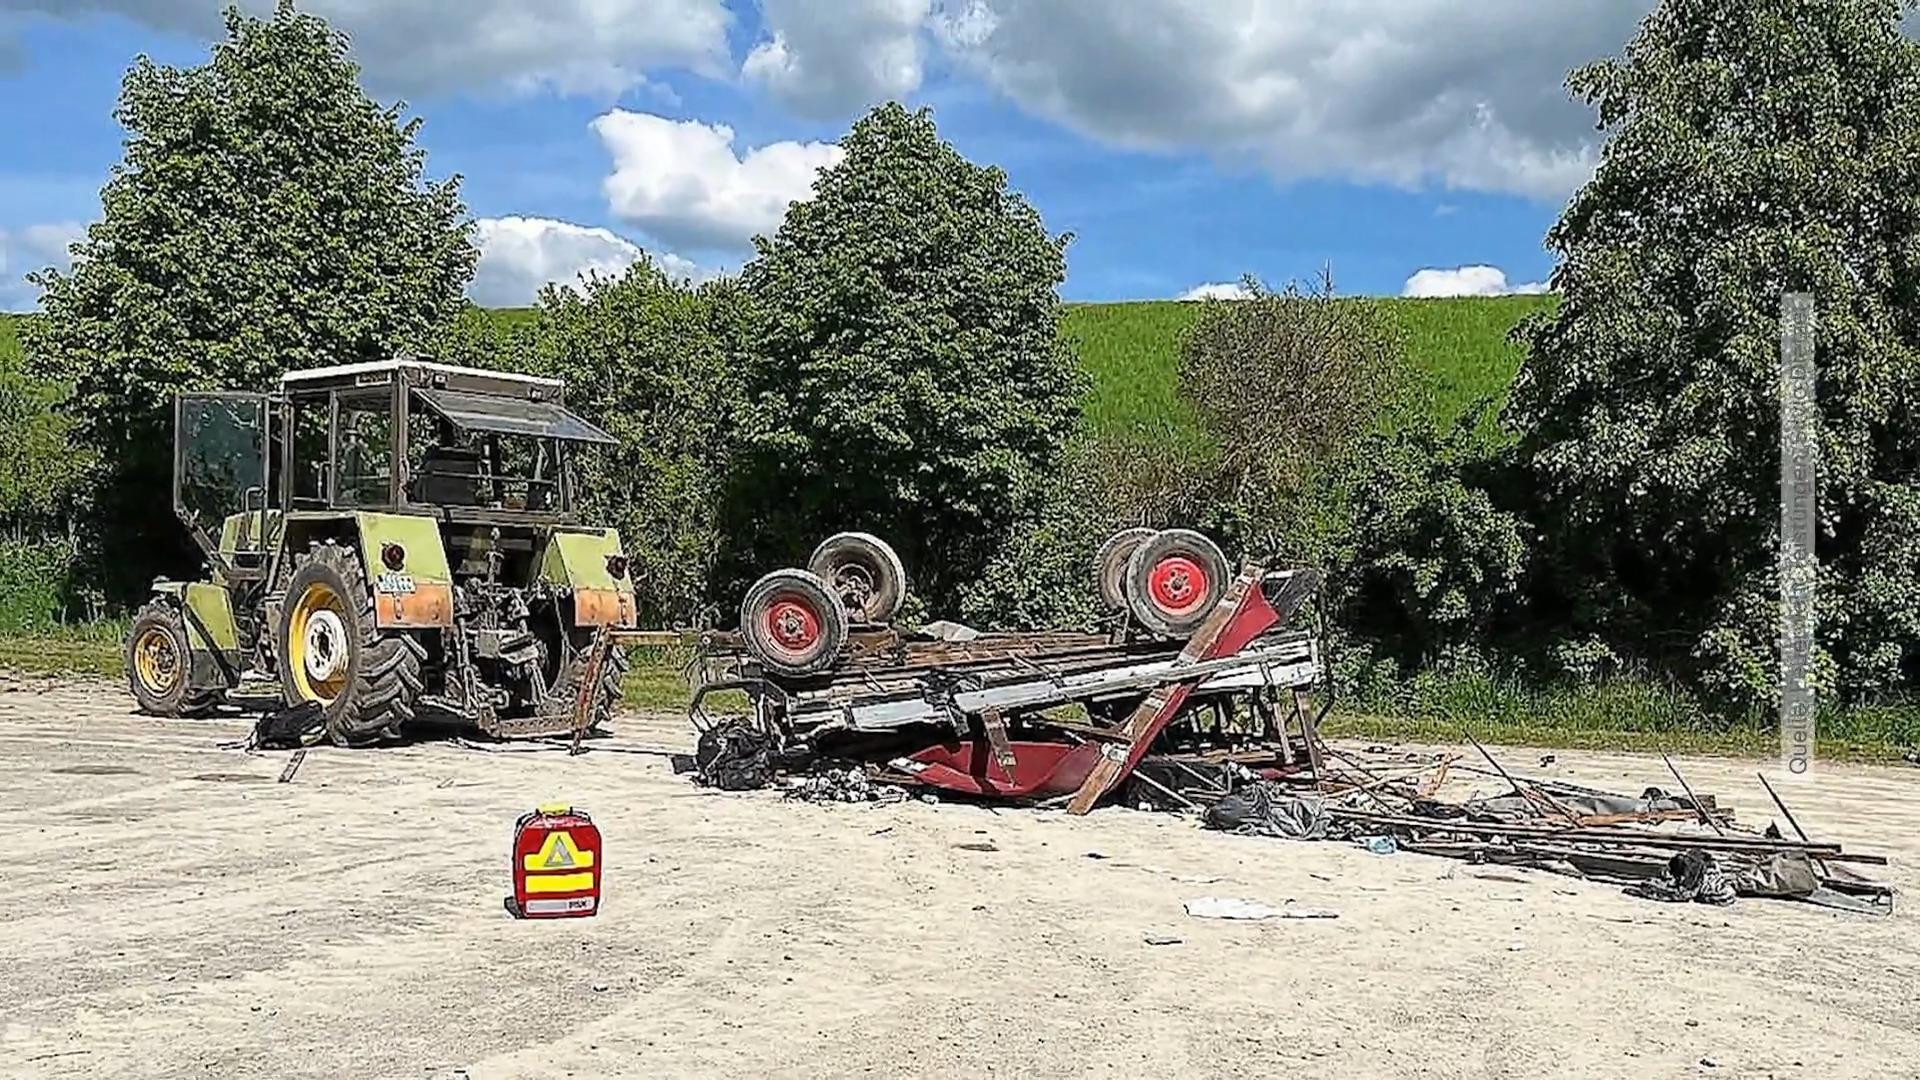 Schwerer Unfall am Vatertag in Thüringen. Traktoranhänger kippt um